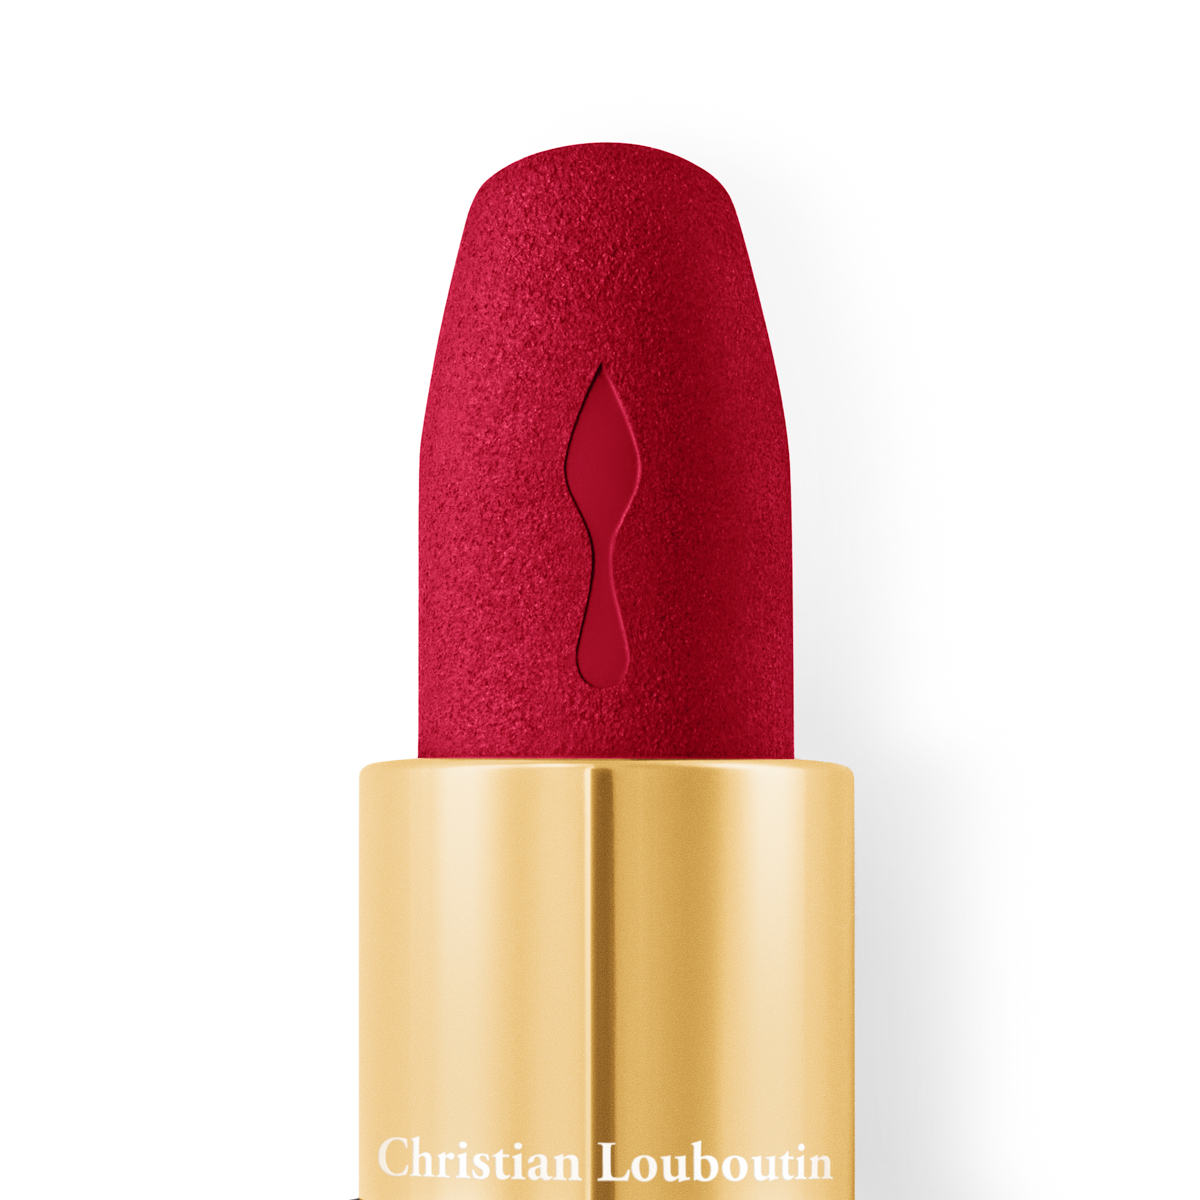 Christian Louboutin Lipstick Red Velvet Matte Shade Miss Loubi